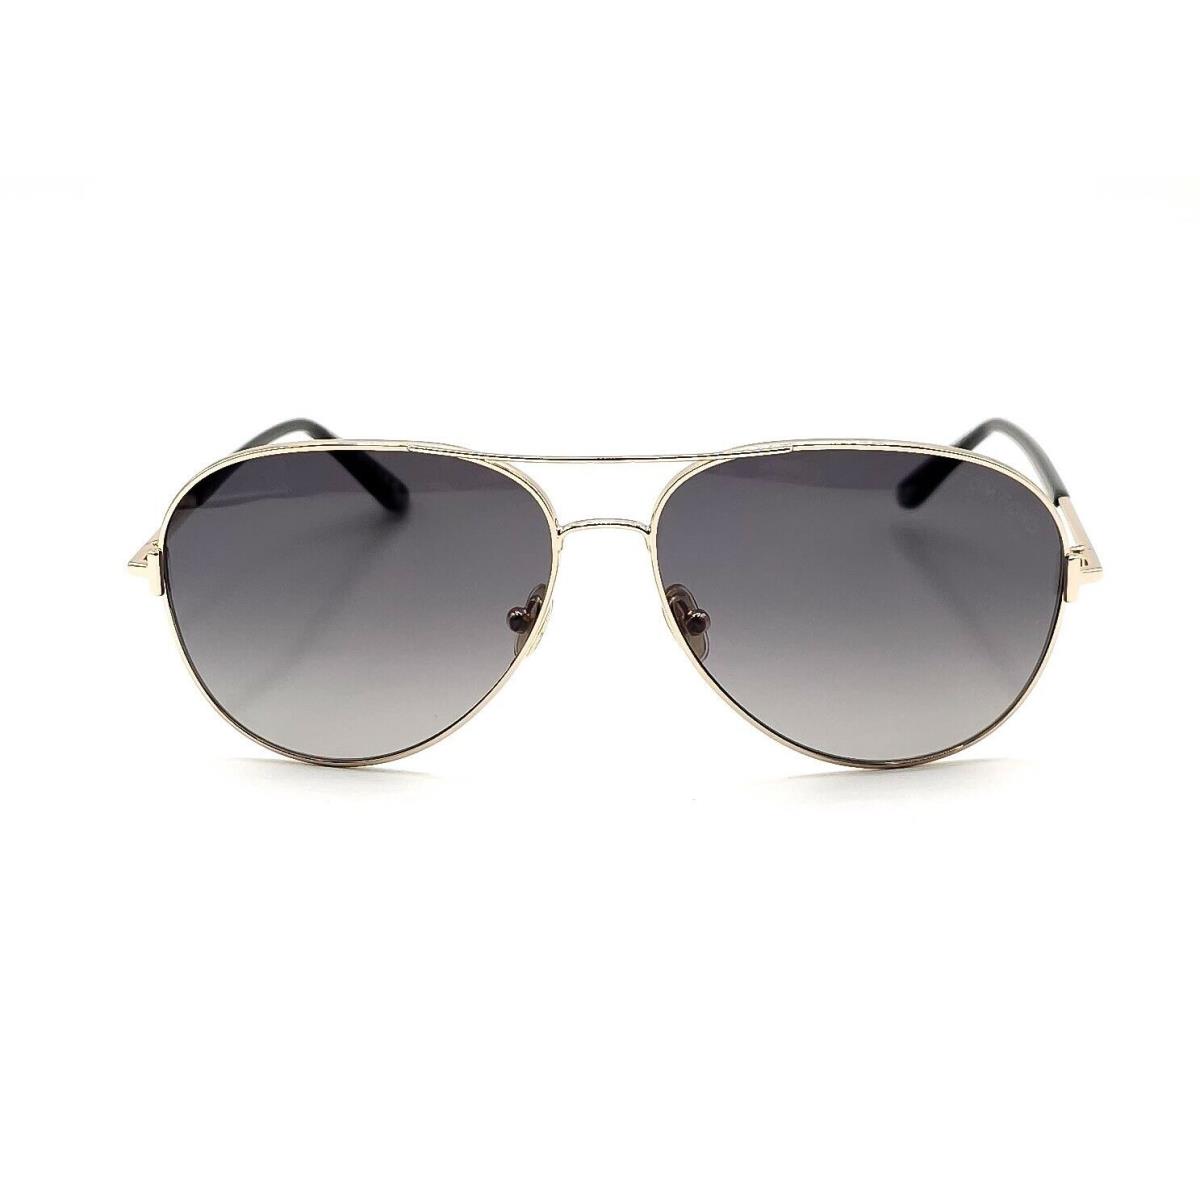 Tom Ford TF 0823 Clark Sunglasses 28D Gold/gray Gradient Polarized Lenses